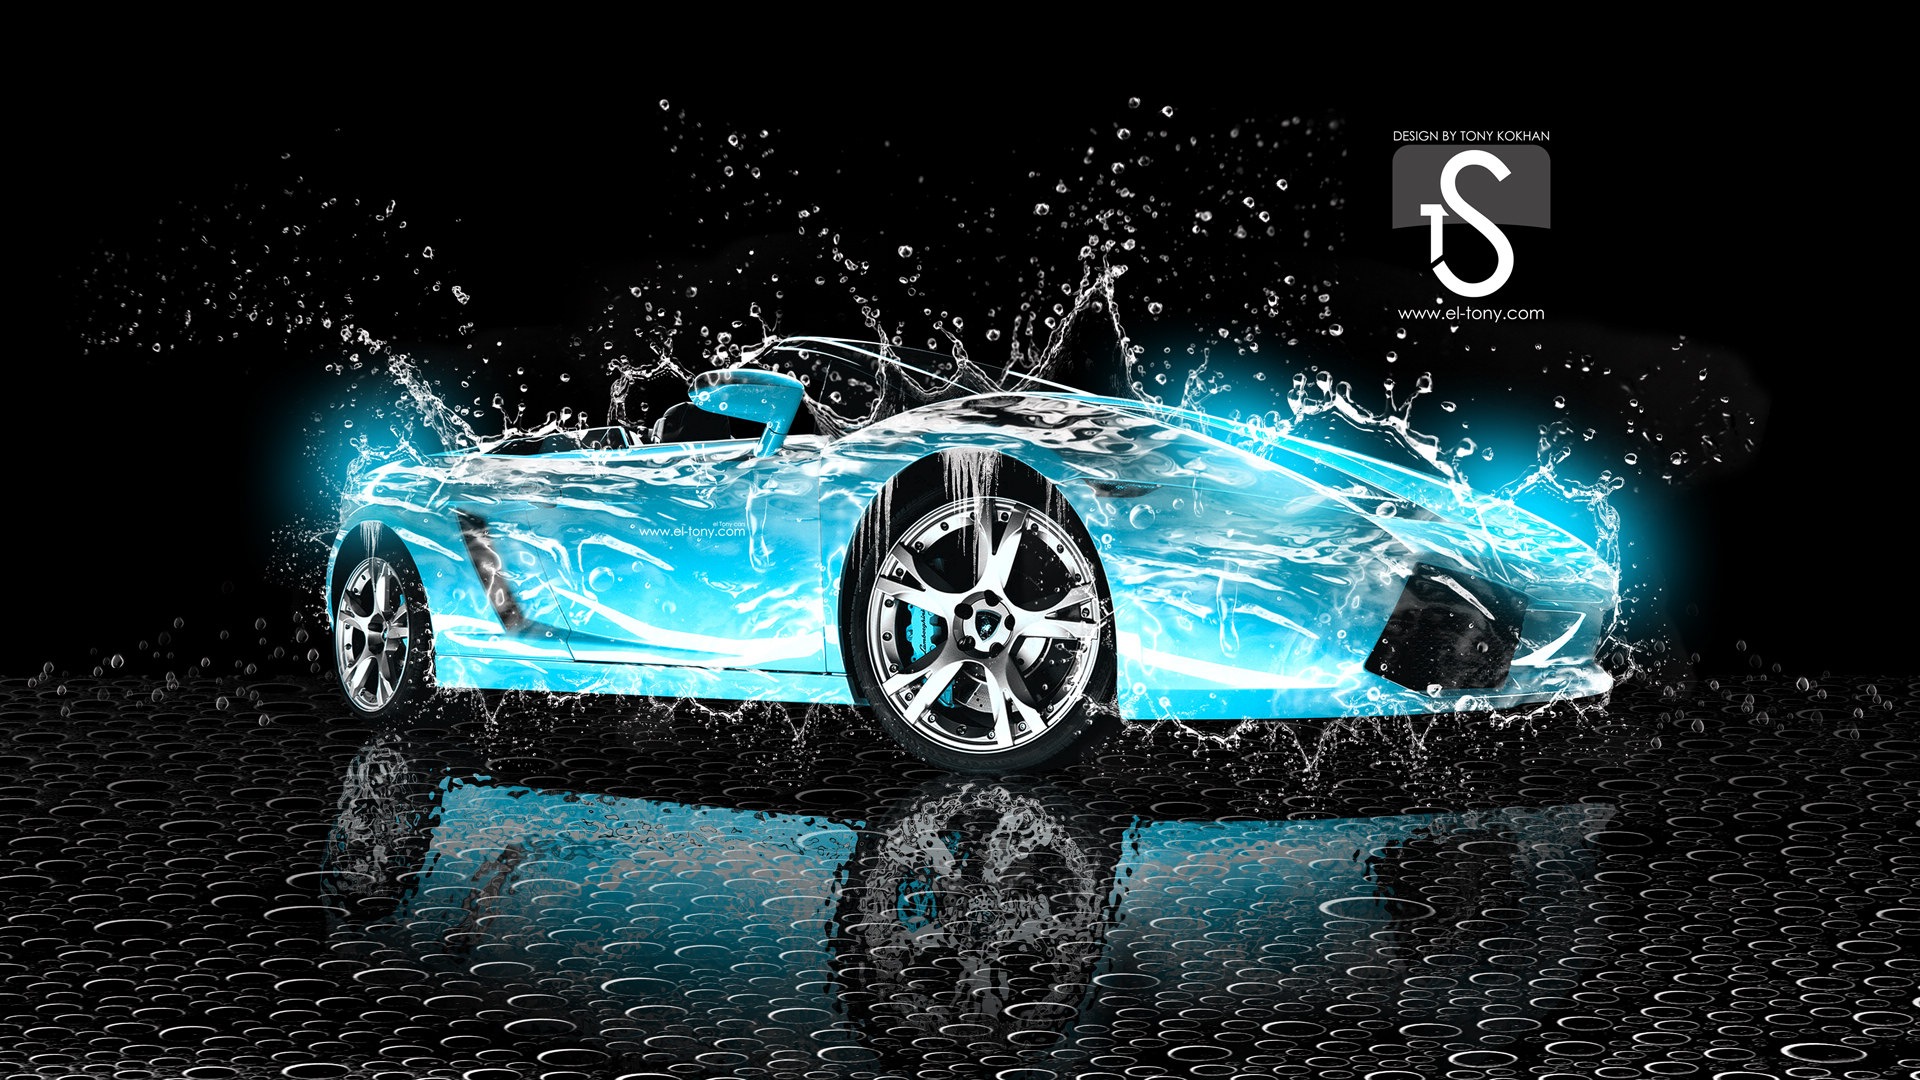 Les gouttes d'eau splash, beau fond d'écran de conception créative de voiture #22 - 1920x1080